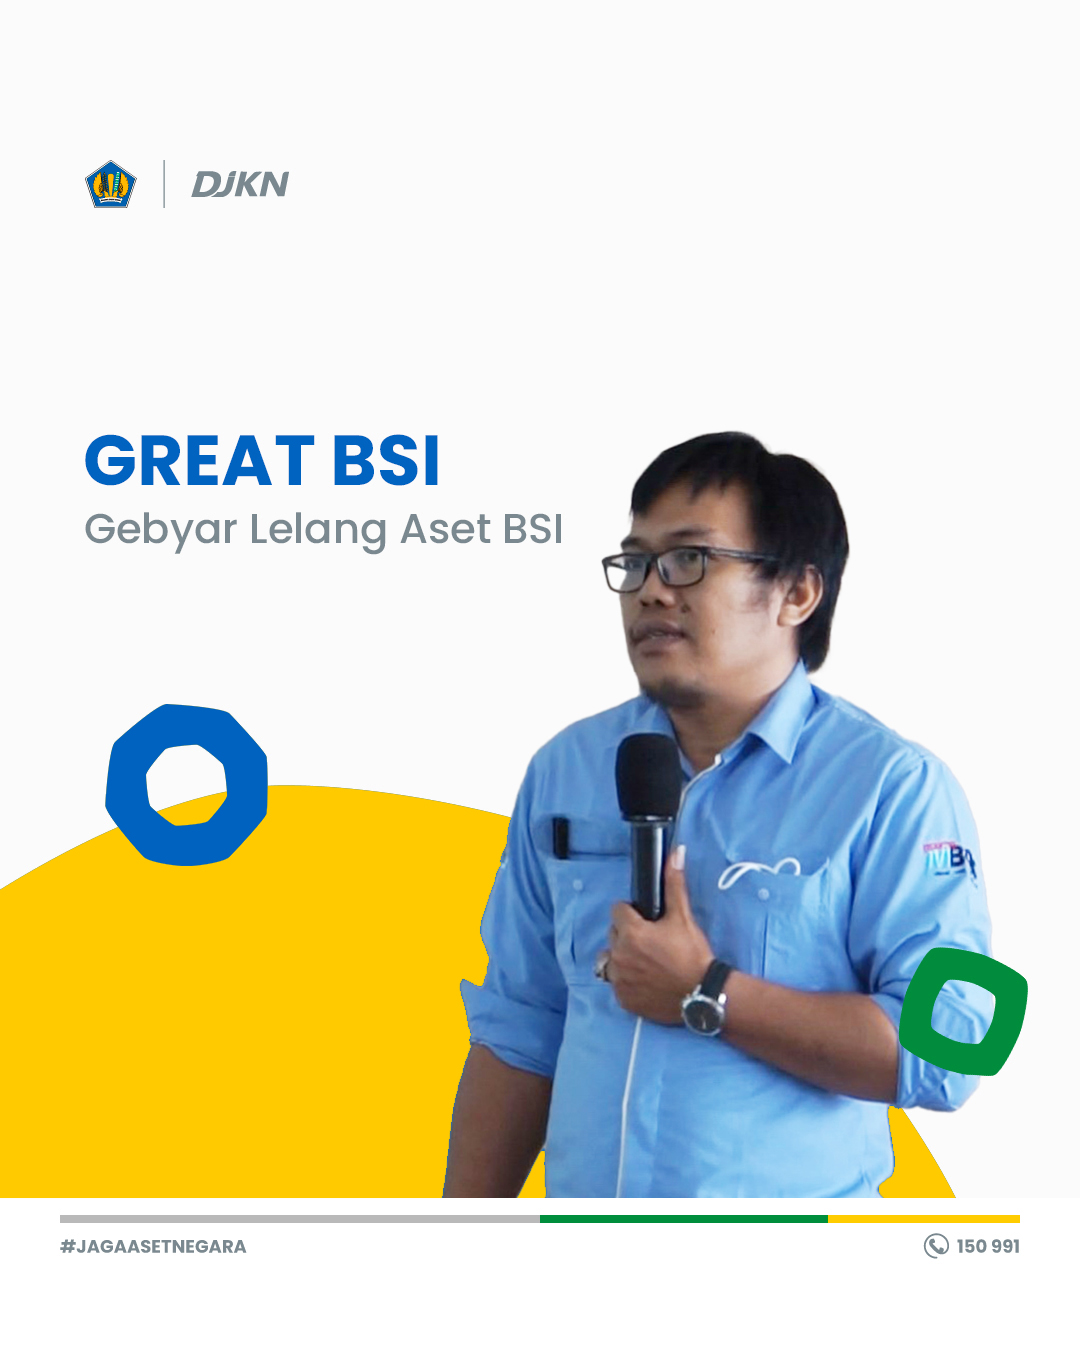 Great BSI - Gebyar Lelang Aset BSI bersama KPKNL Malang